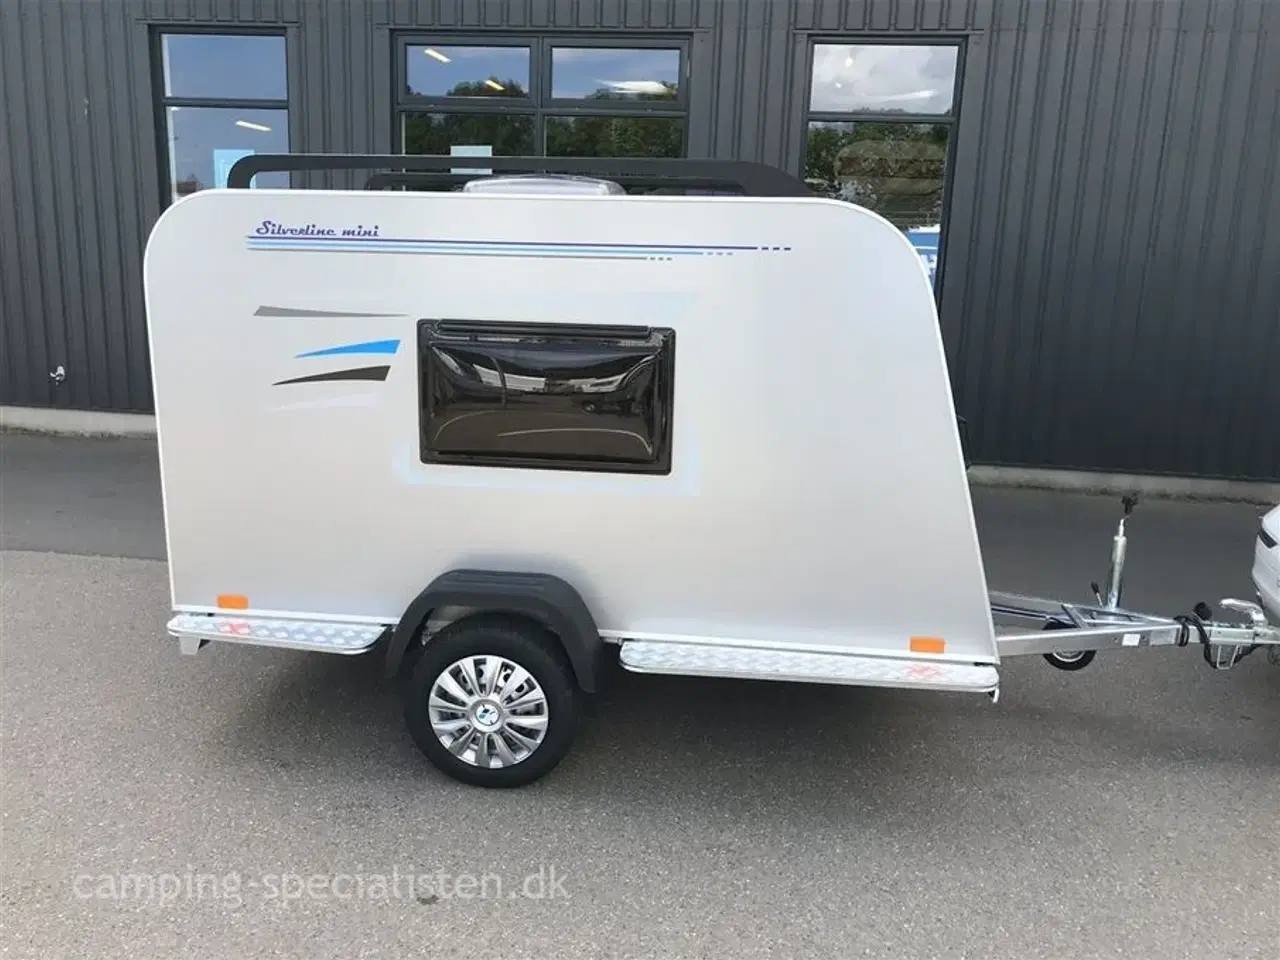 Billede 2 - 2024 - Tomplan Silverline Mini    NY Mini campingvogn Den populære Silverline i model 2024 - dobbelt seng - Camping-Specialisten.dk